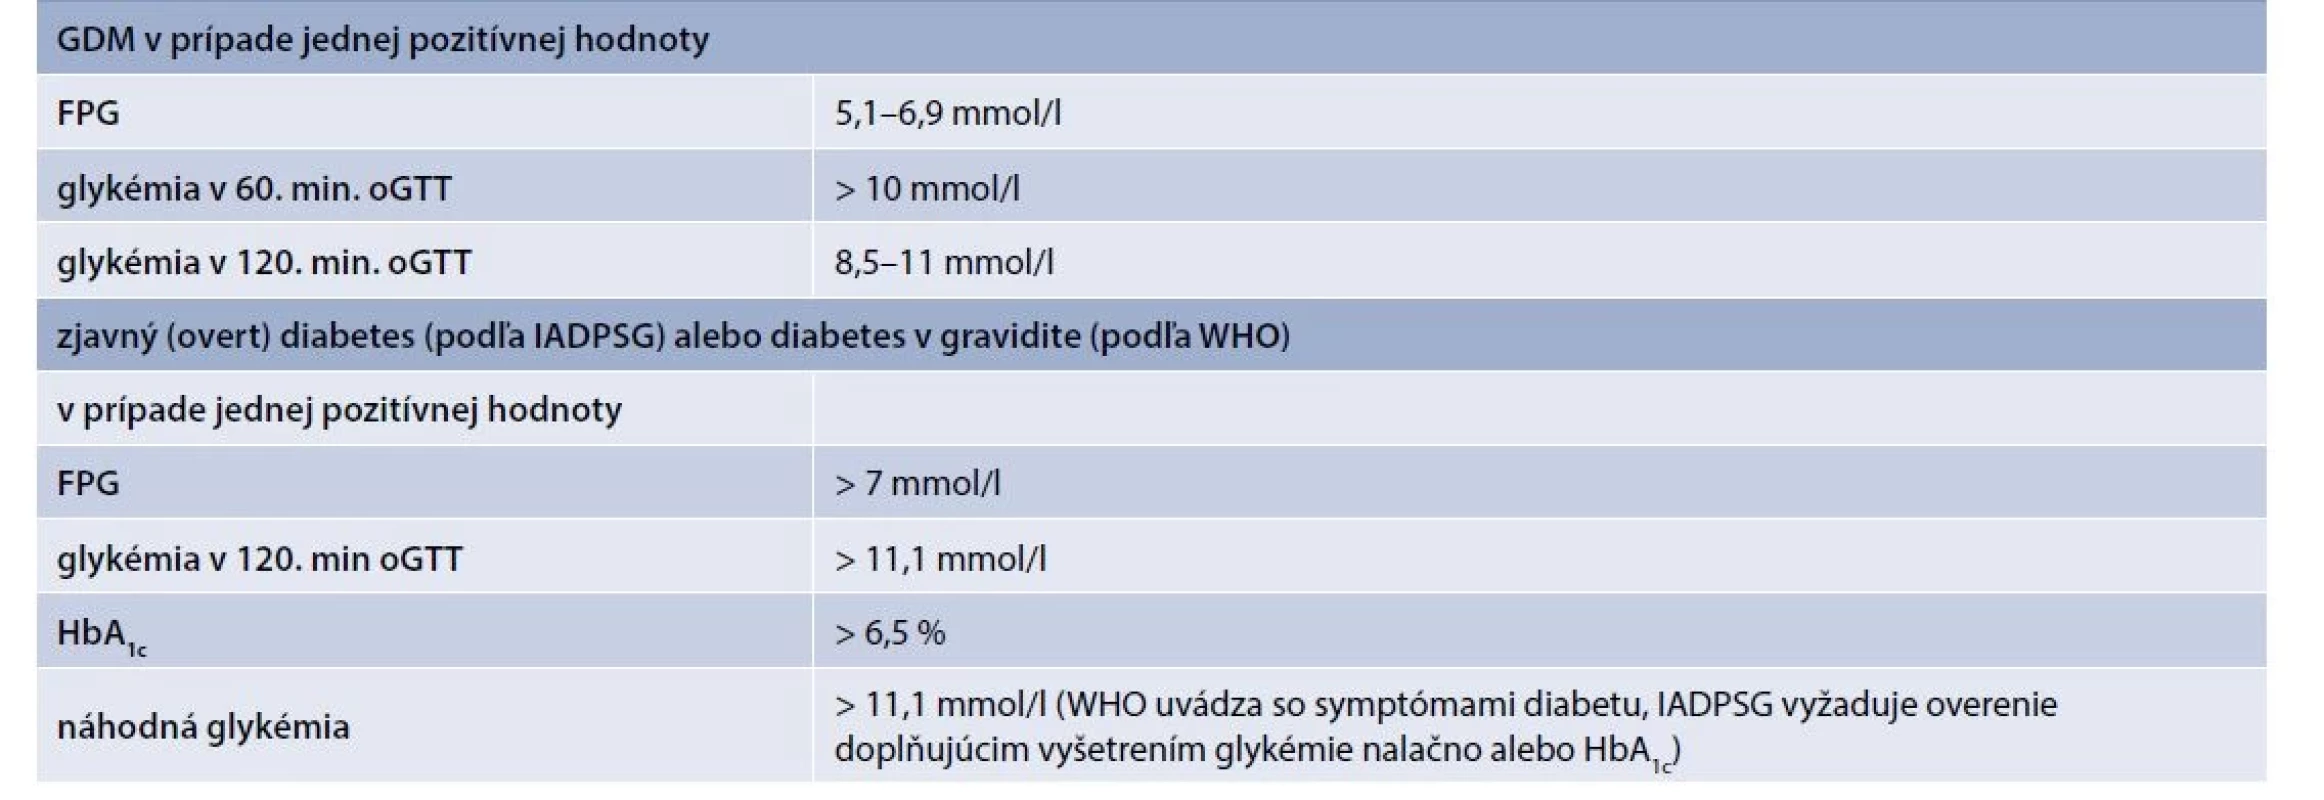 Odporúčaná klasifikácia a diagnostické kritériá porúch metabolizmu glukózy prvýkrát
diagnostikovaných v gravidite (podľa 75 g oGTT v 24.–28. týždni gravidity)
podľa IADPSG z roku 2010 a podľa WHO z roku 2013 [21]